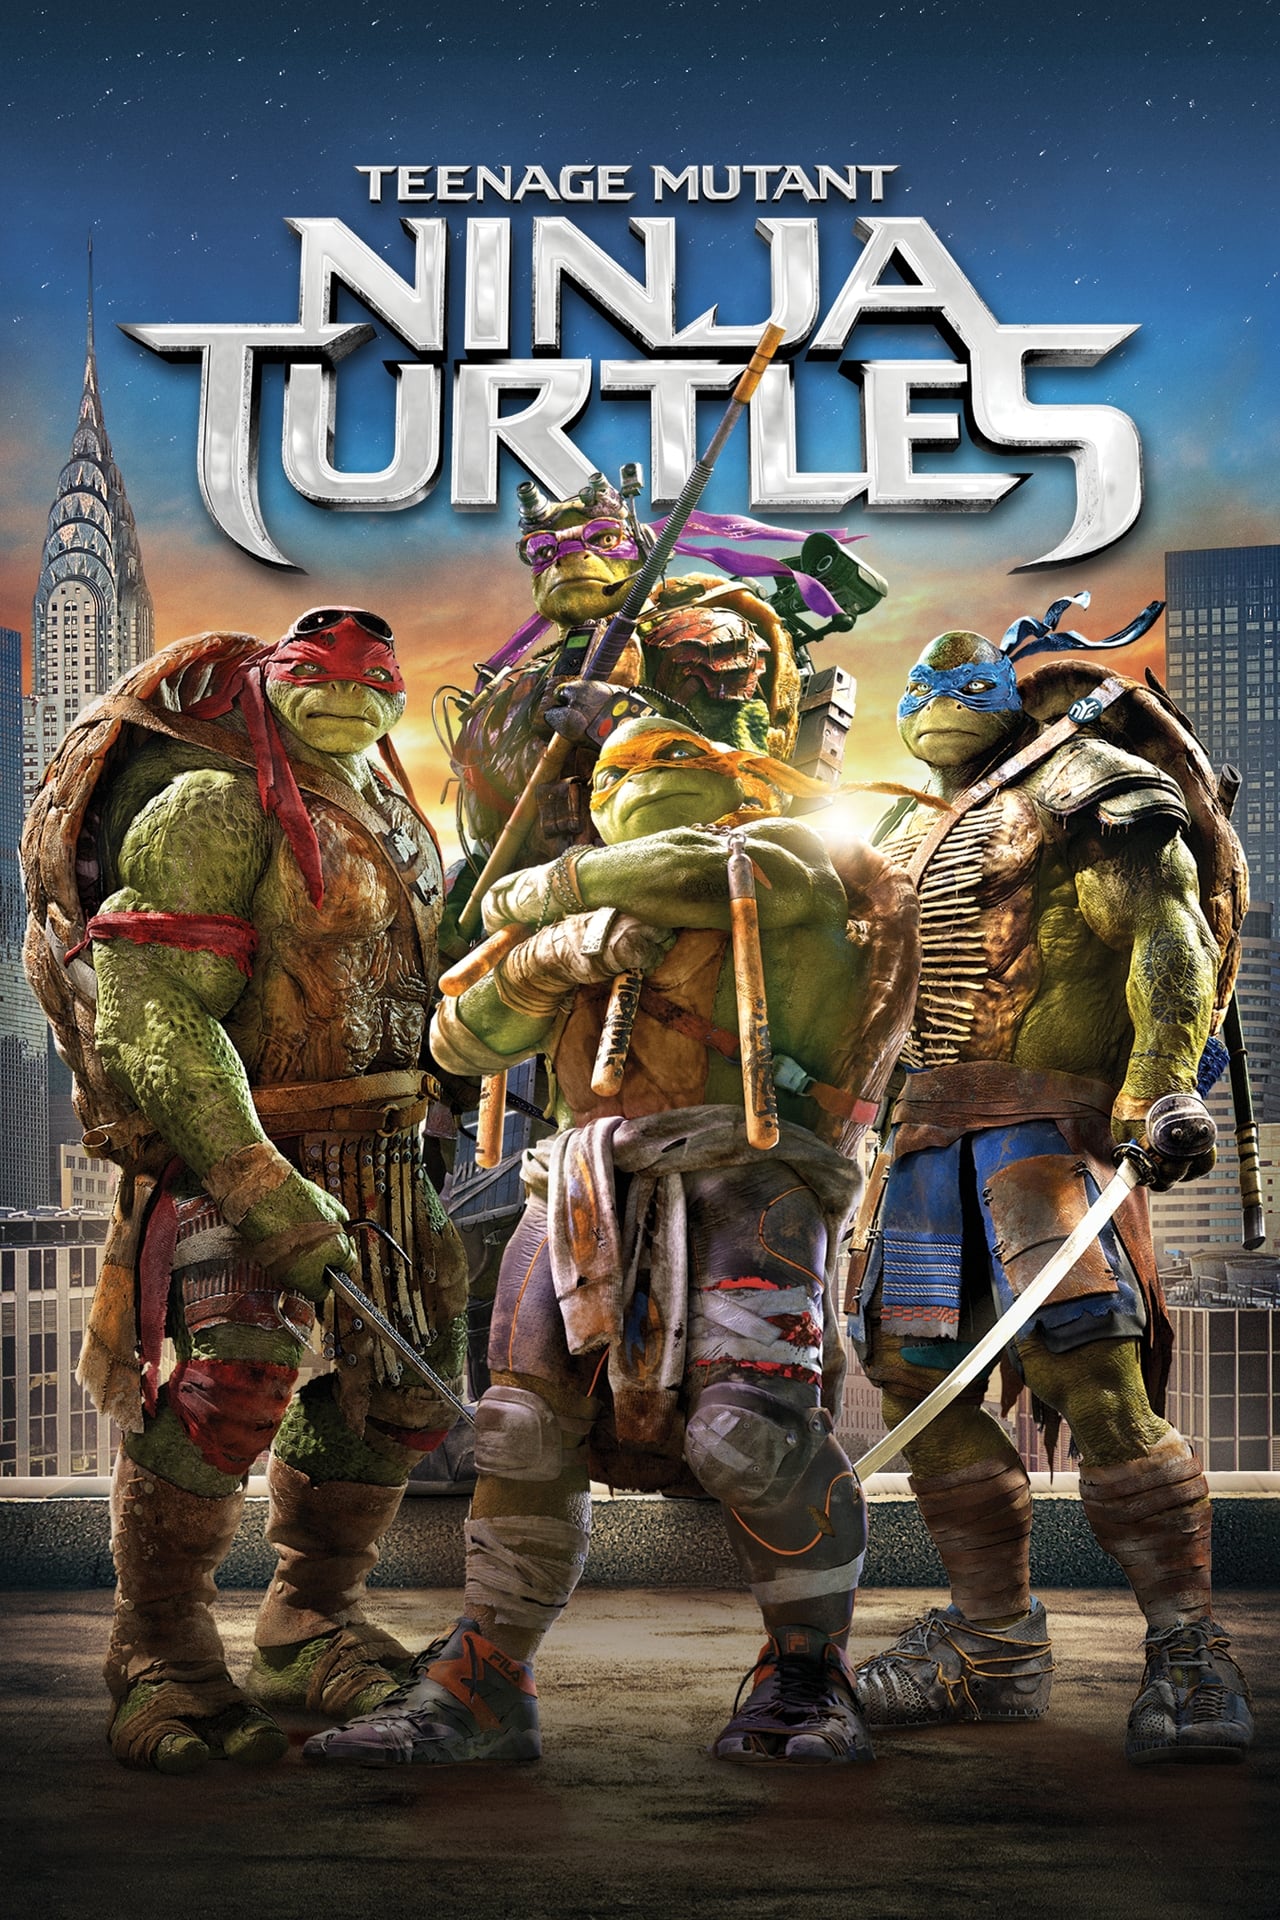 Teenage Mutant Ninja Turtleson Netflix